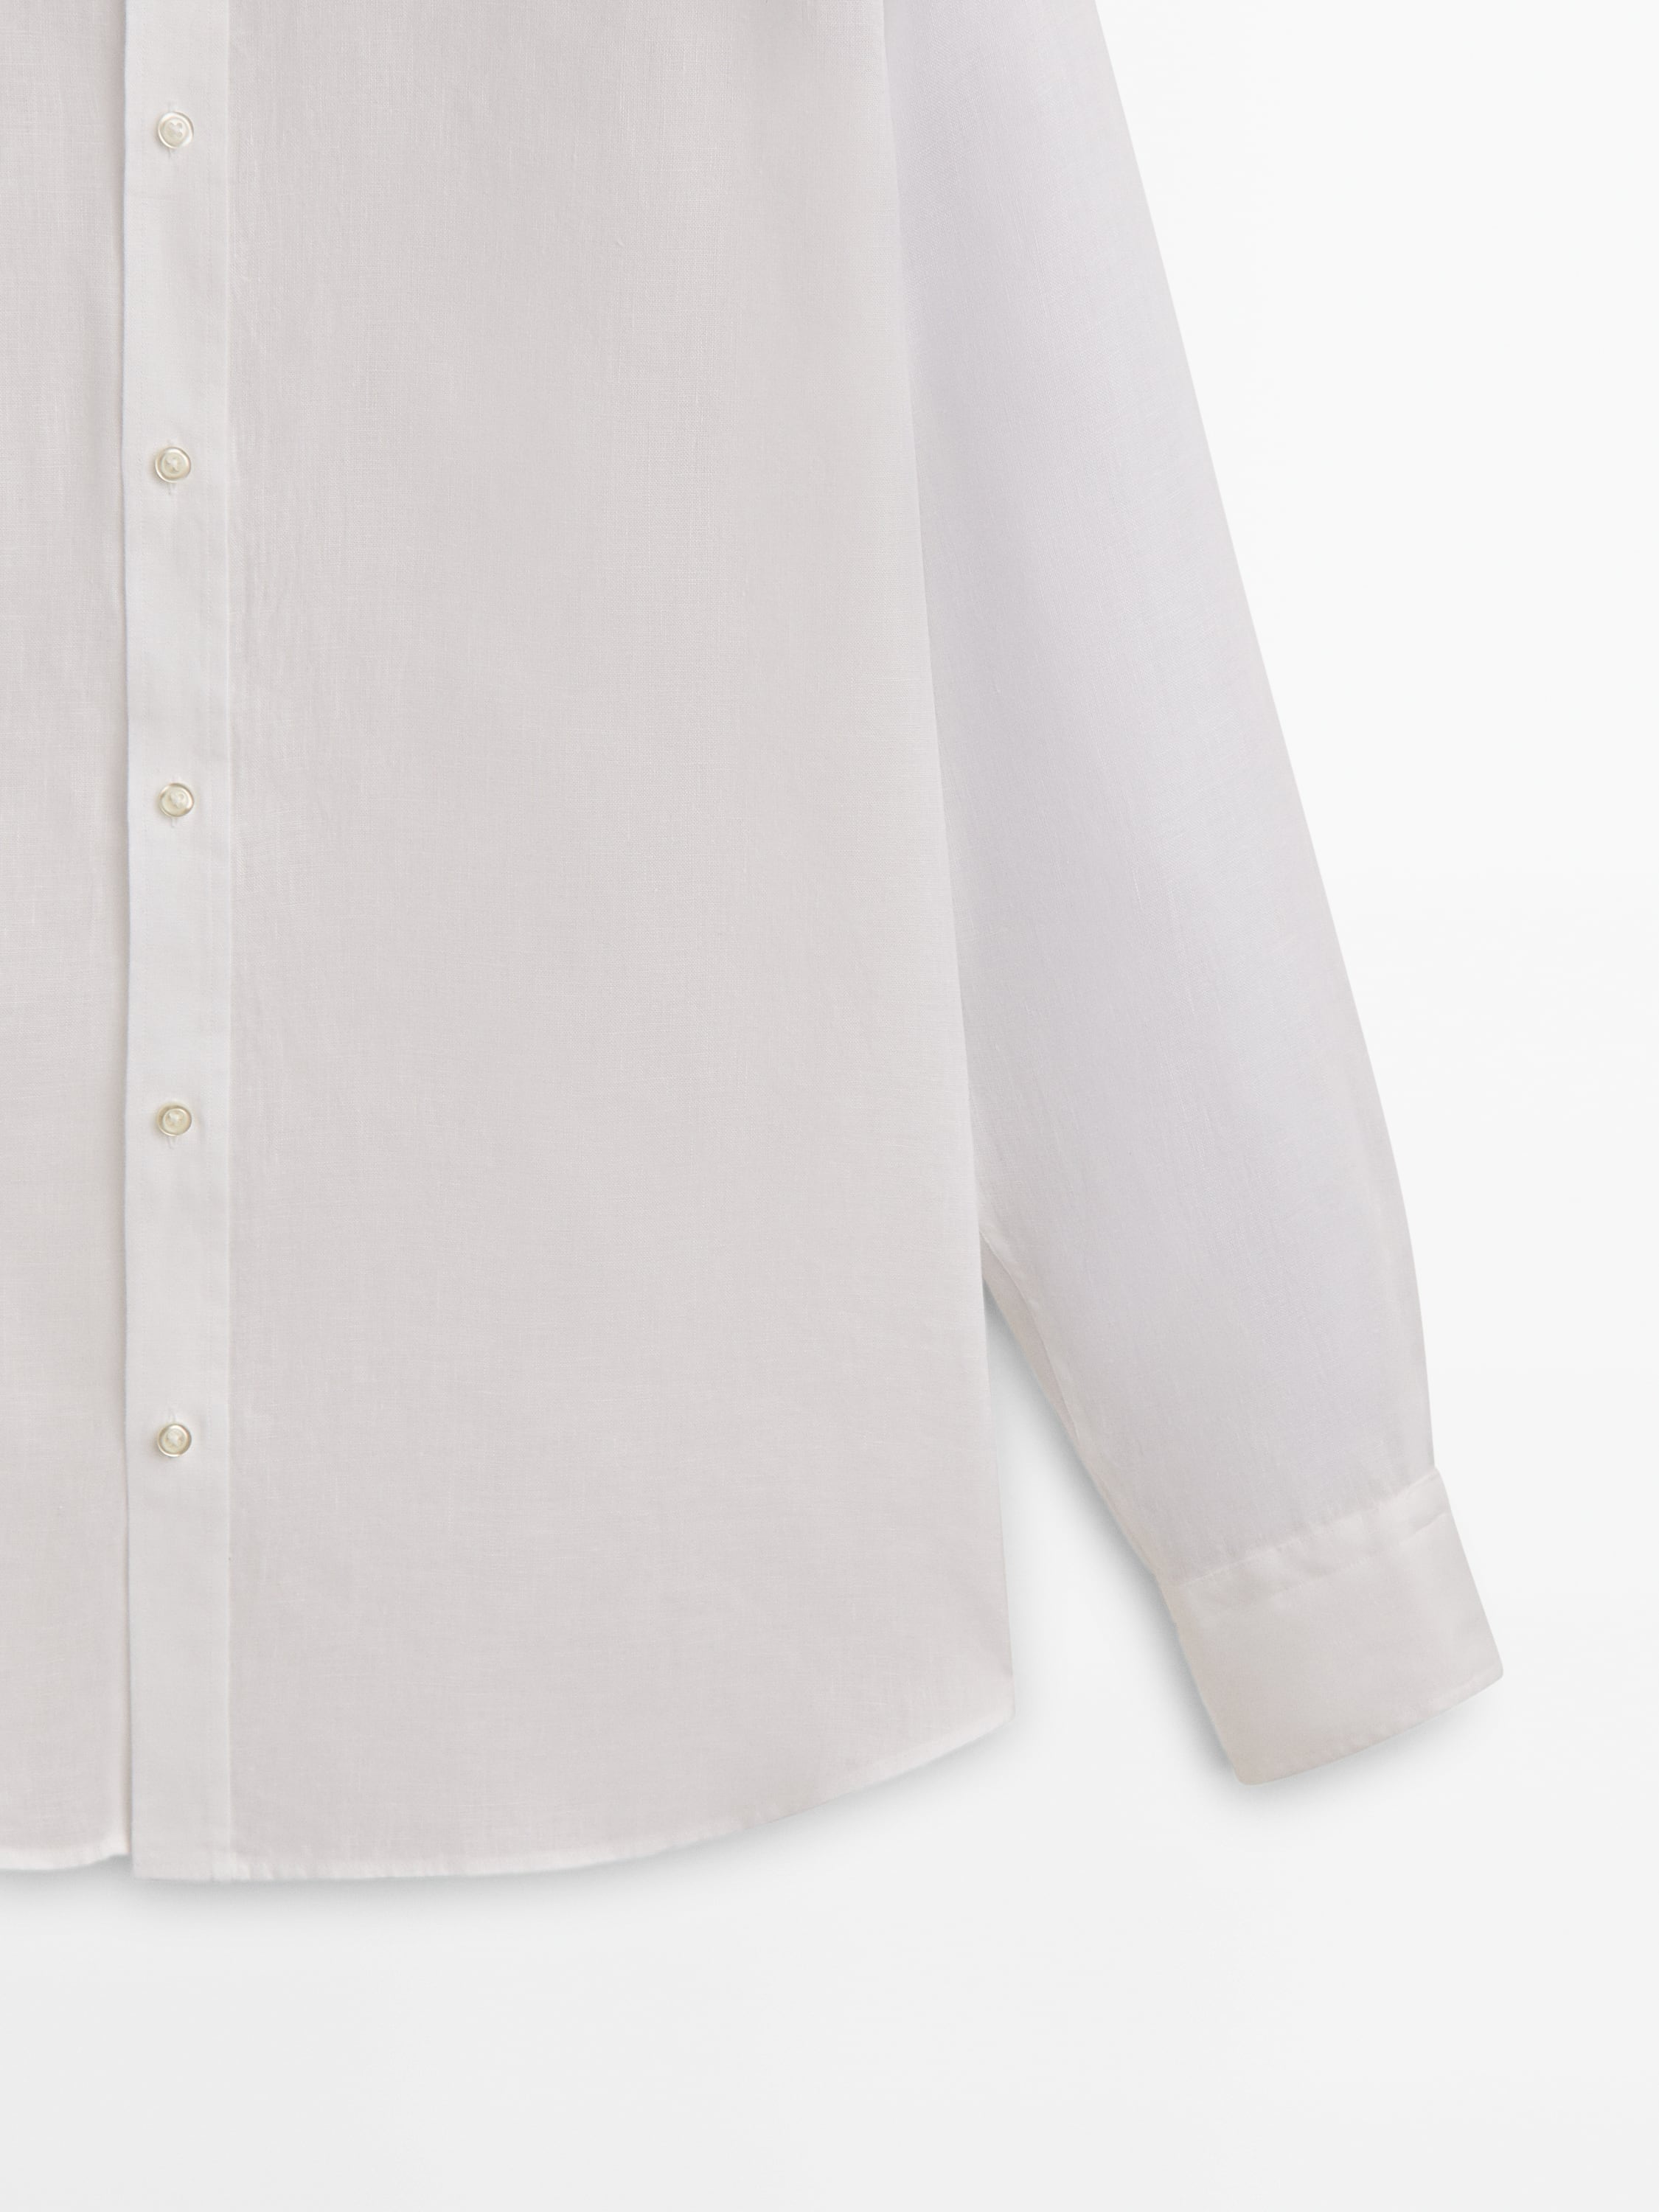 100% linen slim-fit shirt